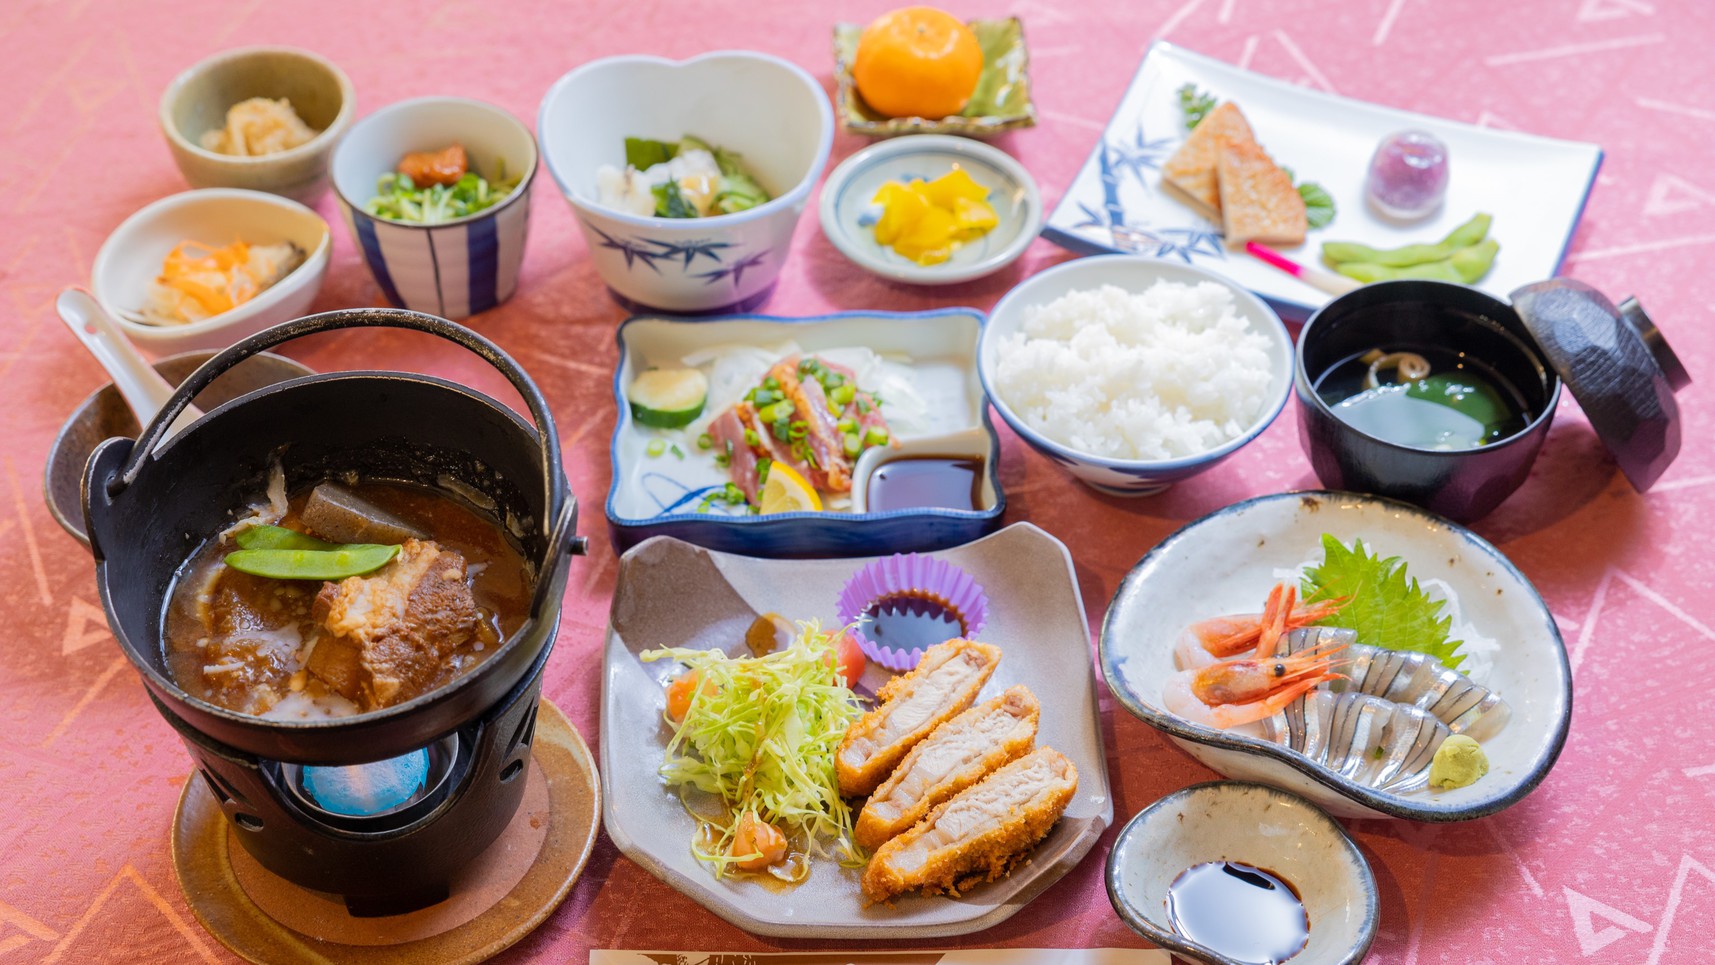 [ご夕食一例]地元薩摩の幸を丹念に吟味した郷土料理。板前の技と真心込めたおもてなし料理をご賞味下さい